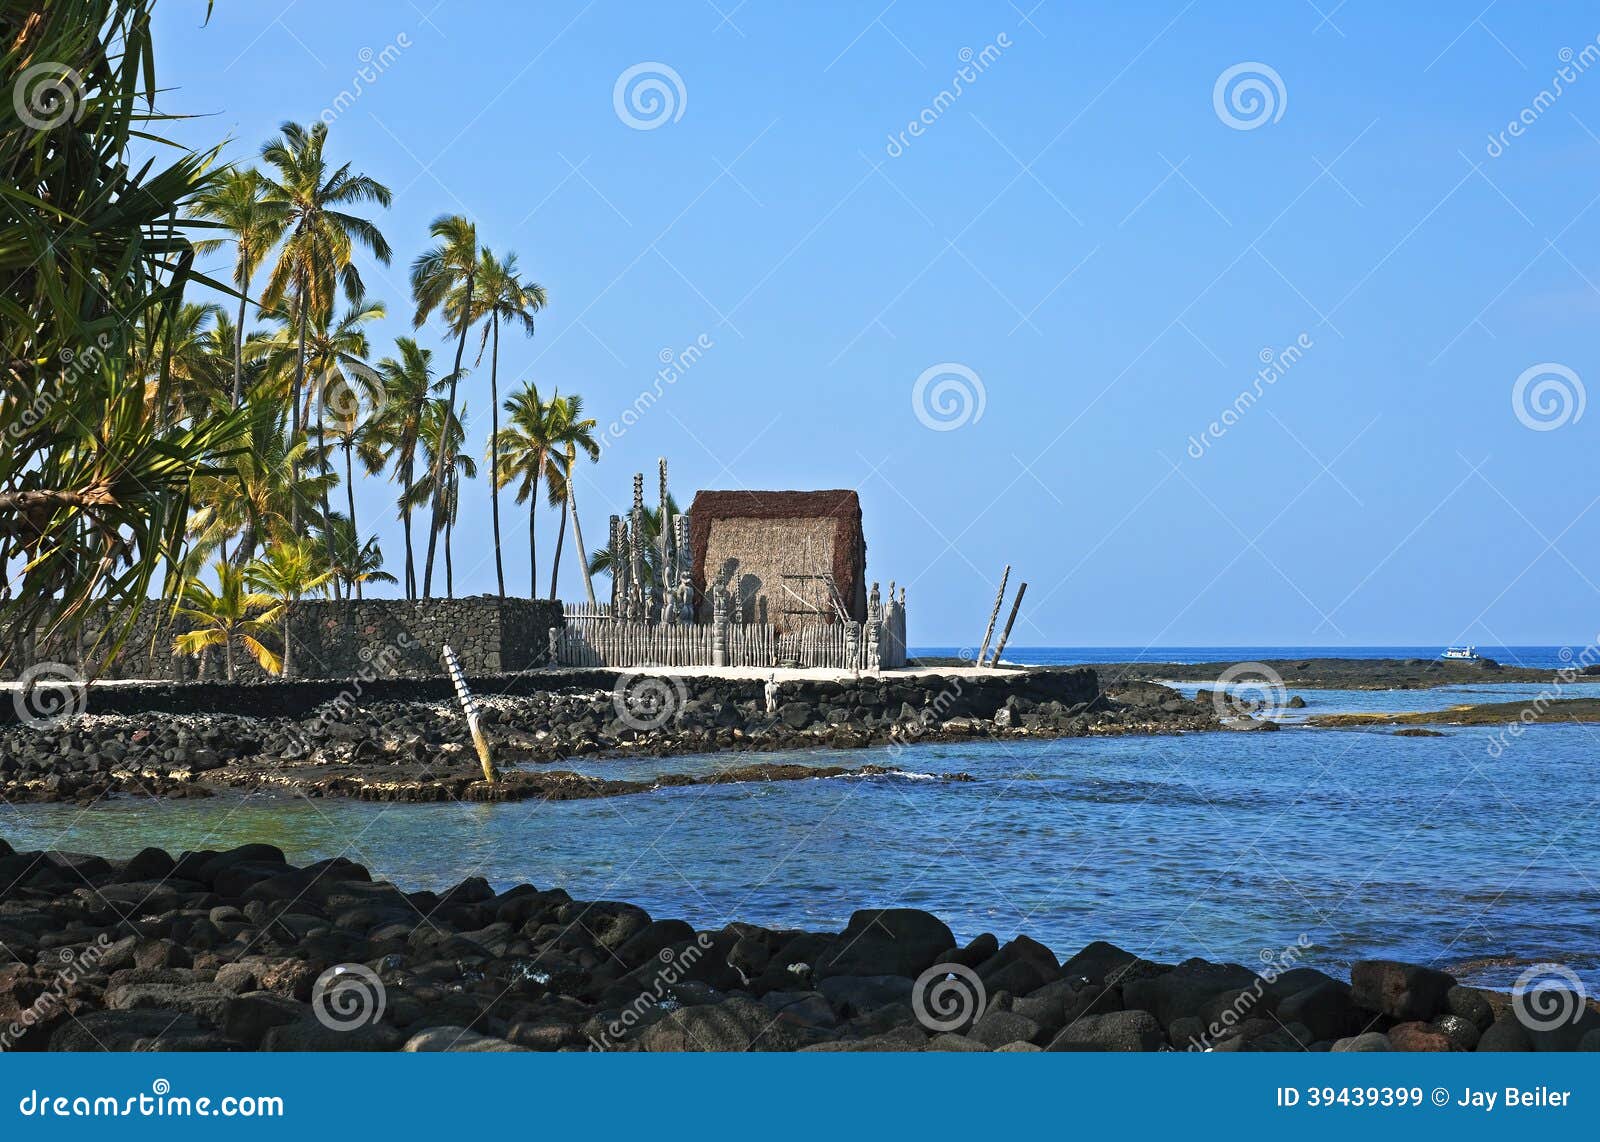 mausoleum of hawaiian royalty